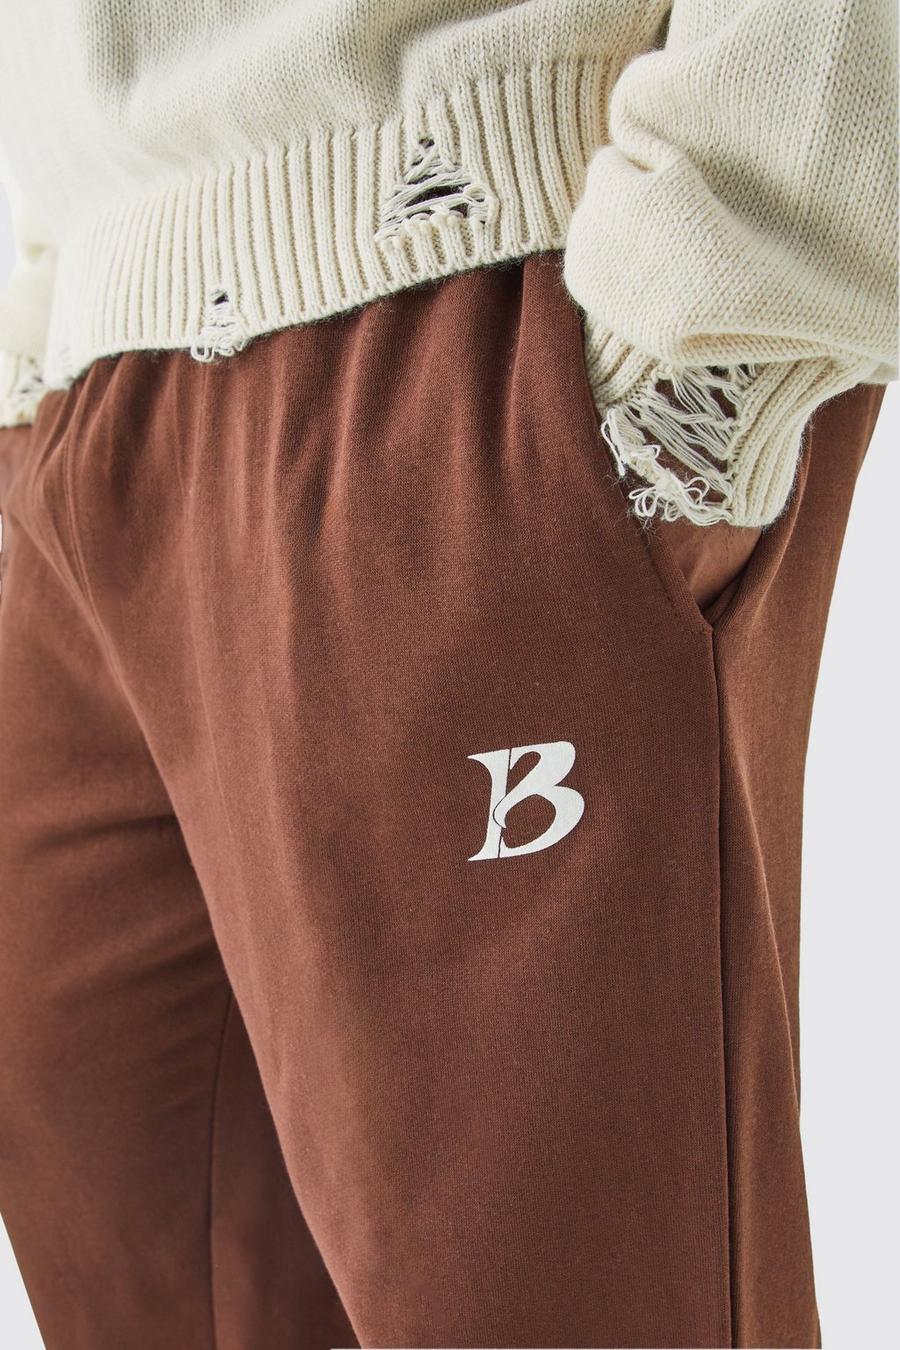 Pantalón deportivo Plus con eslogan Core B en color chocolate